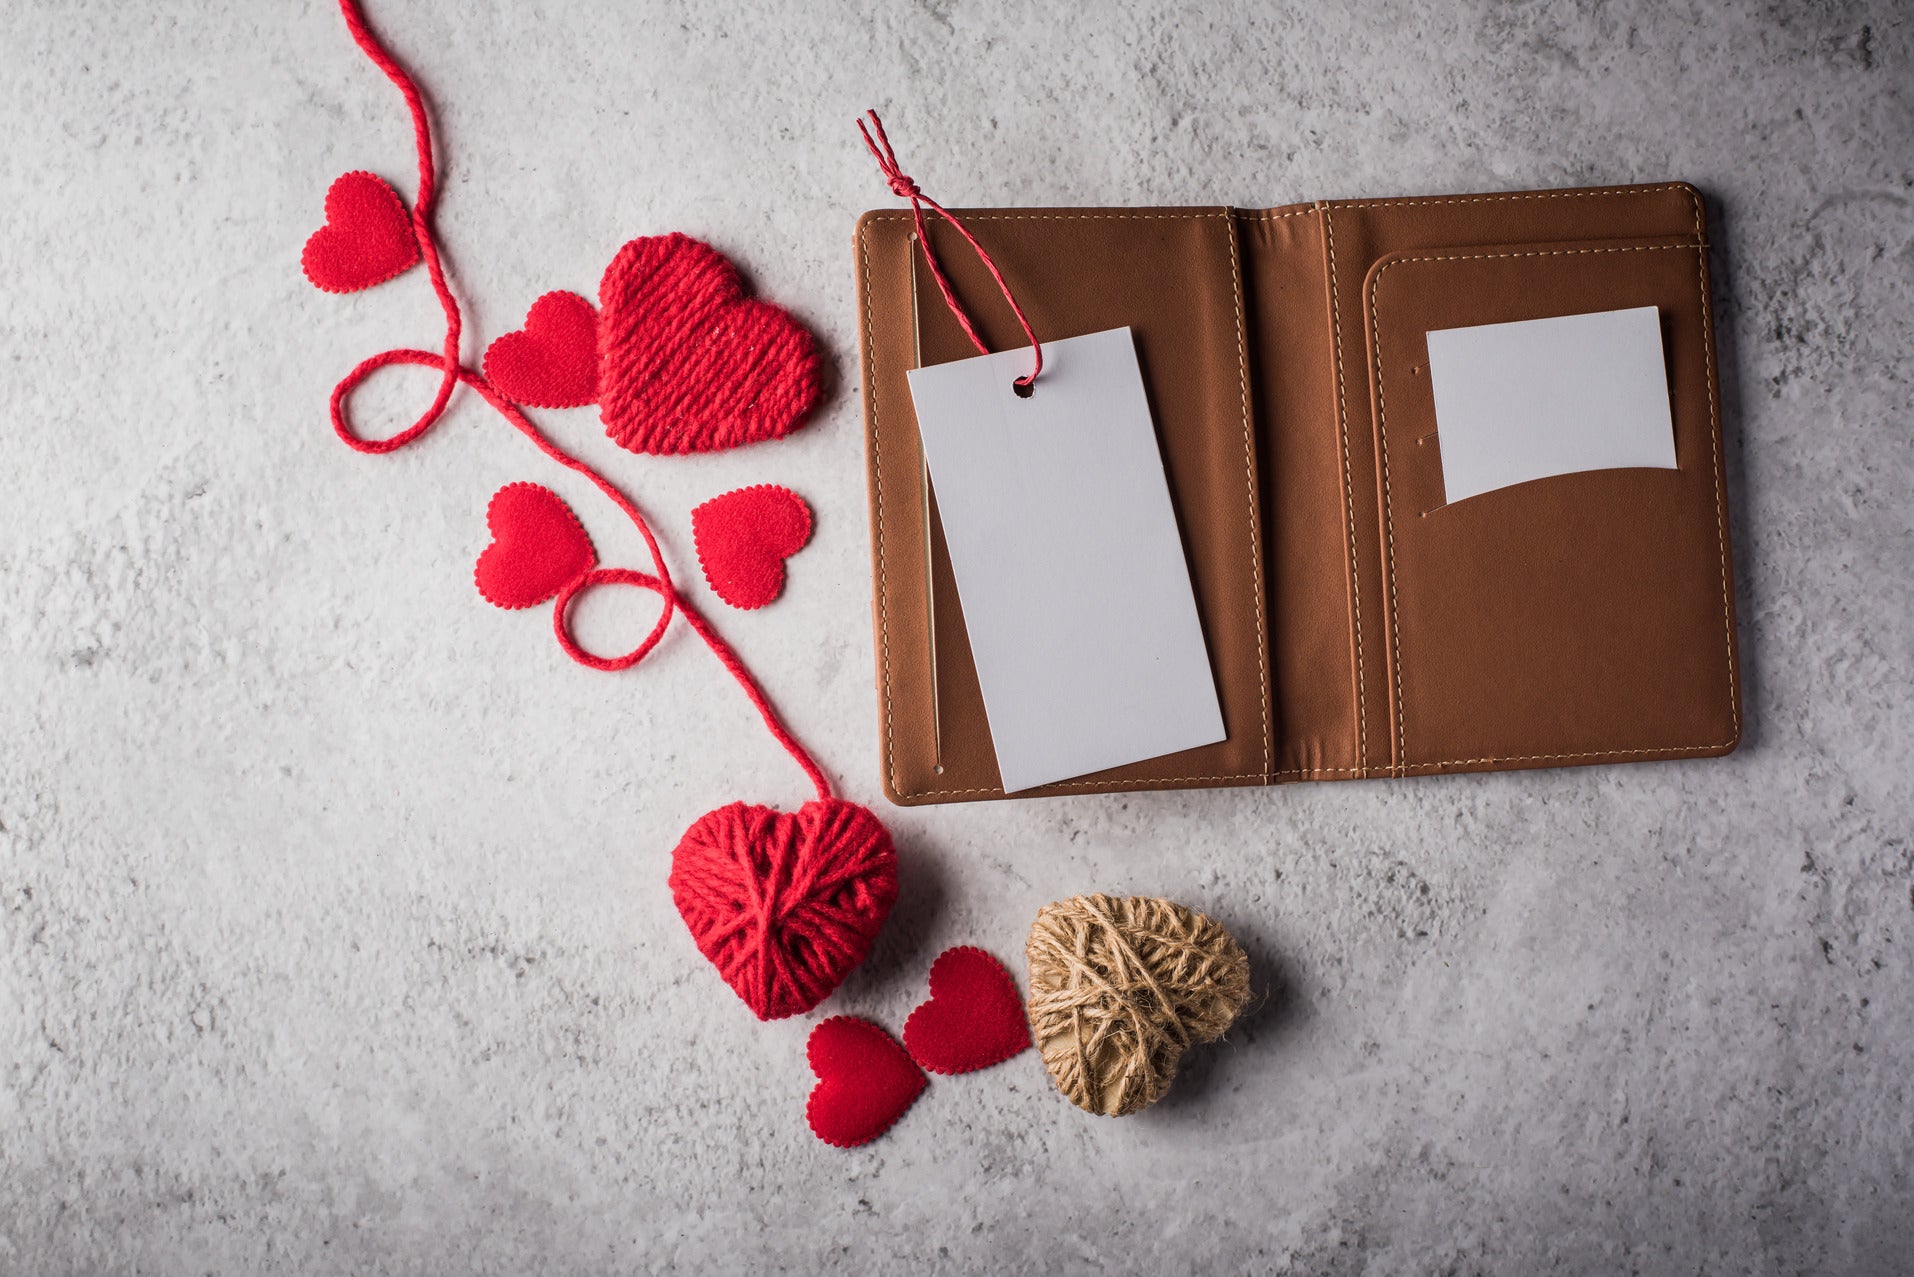 Sevgililer Gününde İsim Baskılı Cüzdan & Çantalar: Kişiye Özel Hediye Seçenekleri